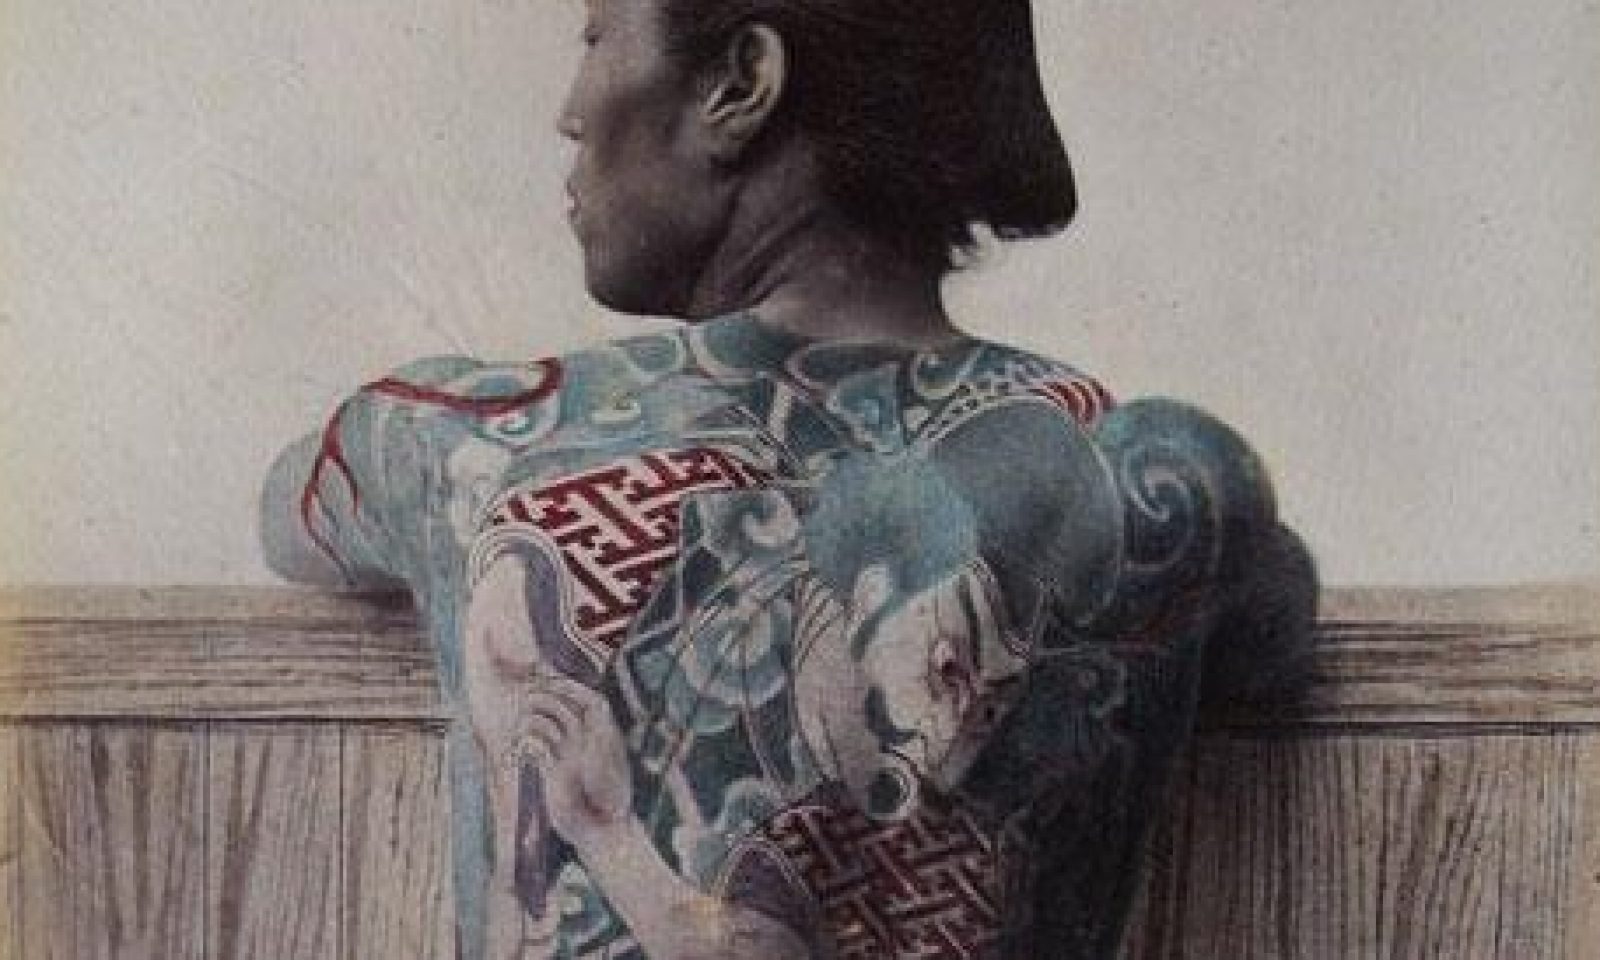 英語脳メルマガ 第号 The Word On The Street Is That Since Yakuza Japanese Mafia Members Are Often The Ones With Tattoos の意味は 英語脳ネット